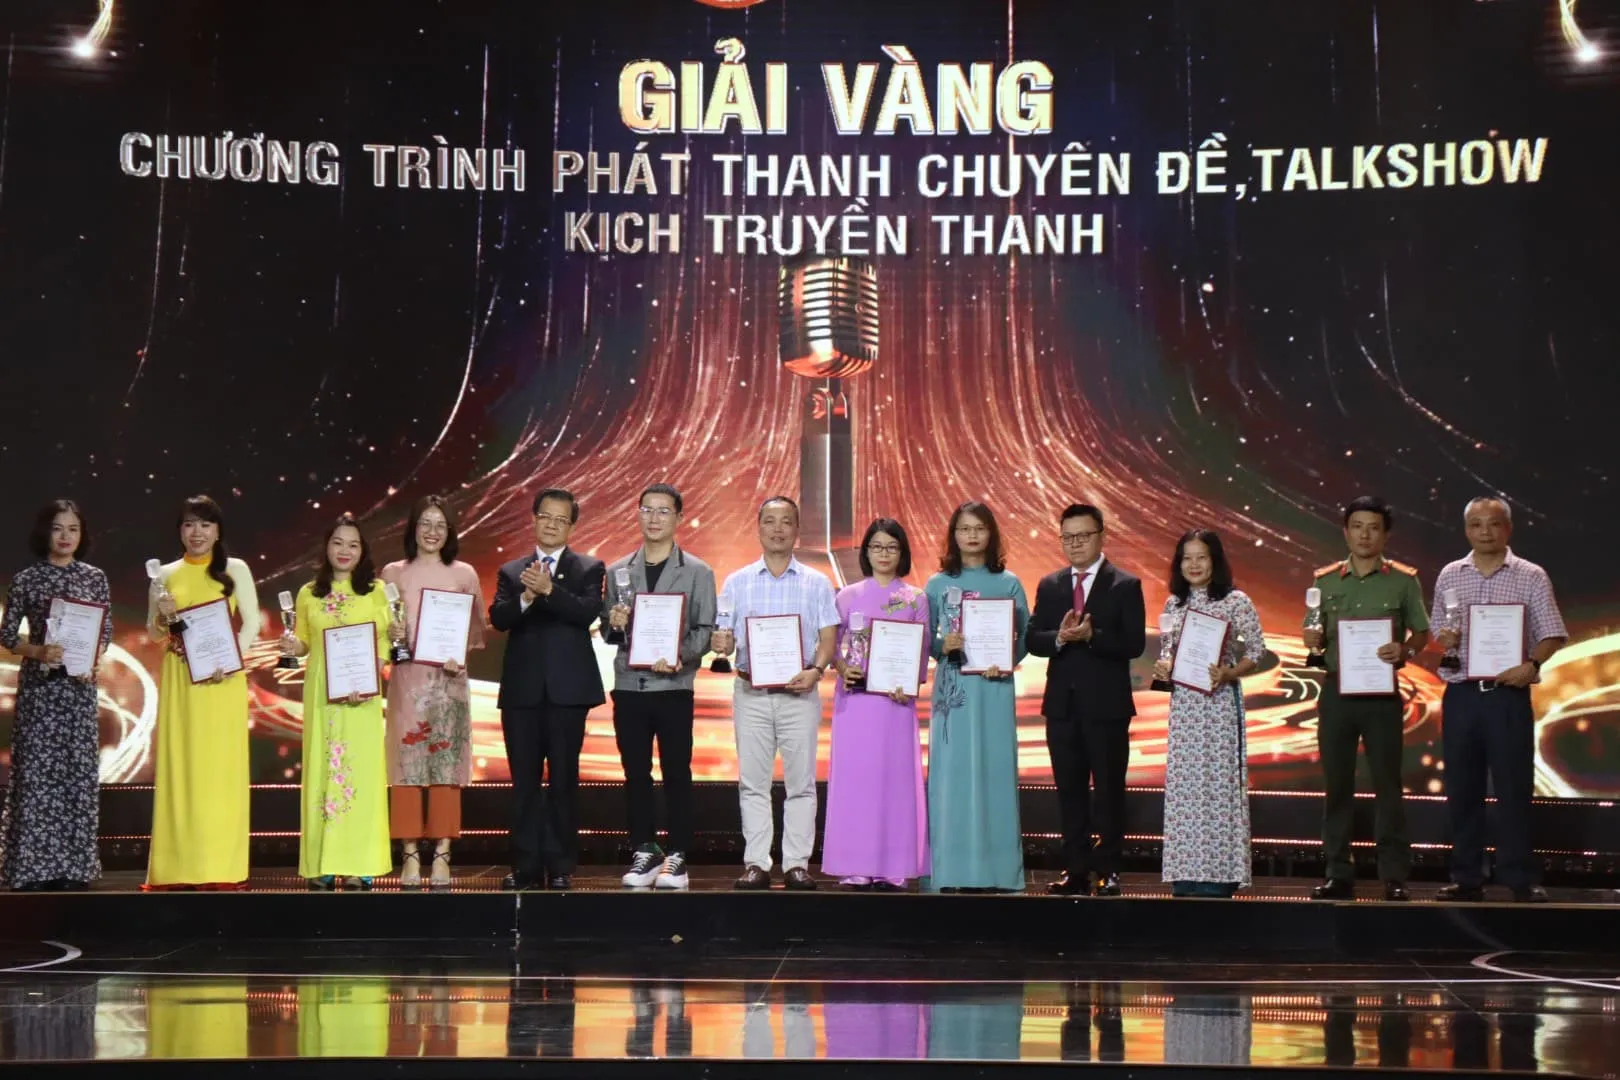 Nhà báo Hồng Thúy (thứ 2 từ trái sang) nhận giải Vàng thể loại chuyên đề - talkshow